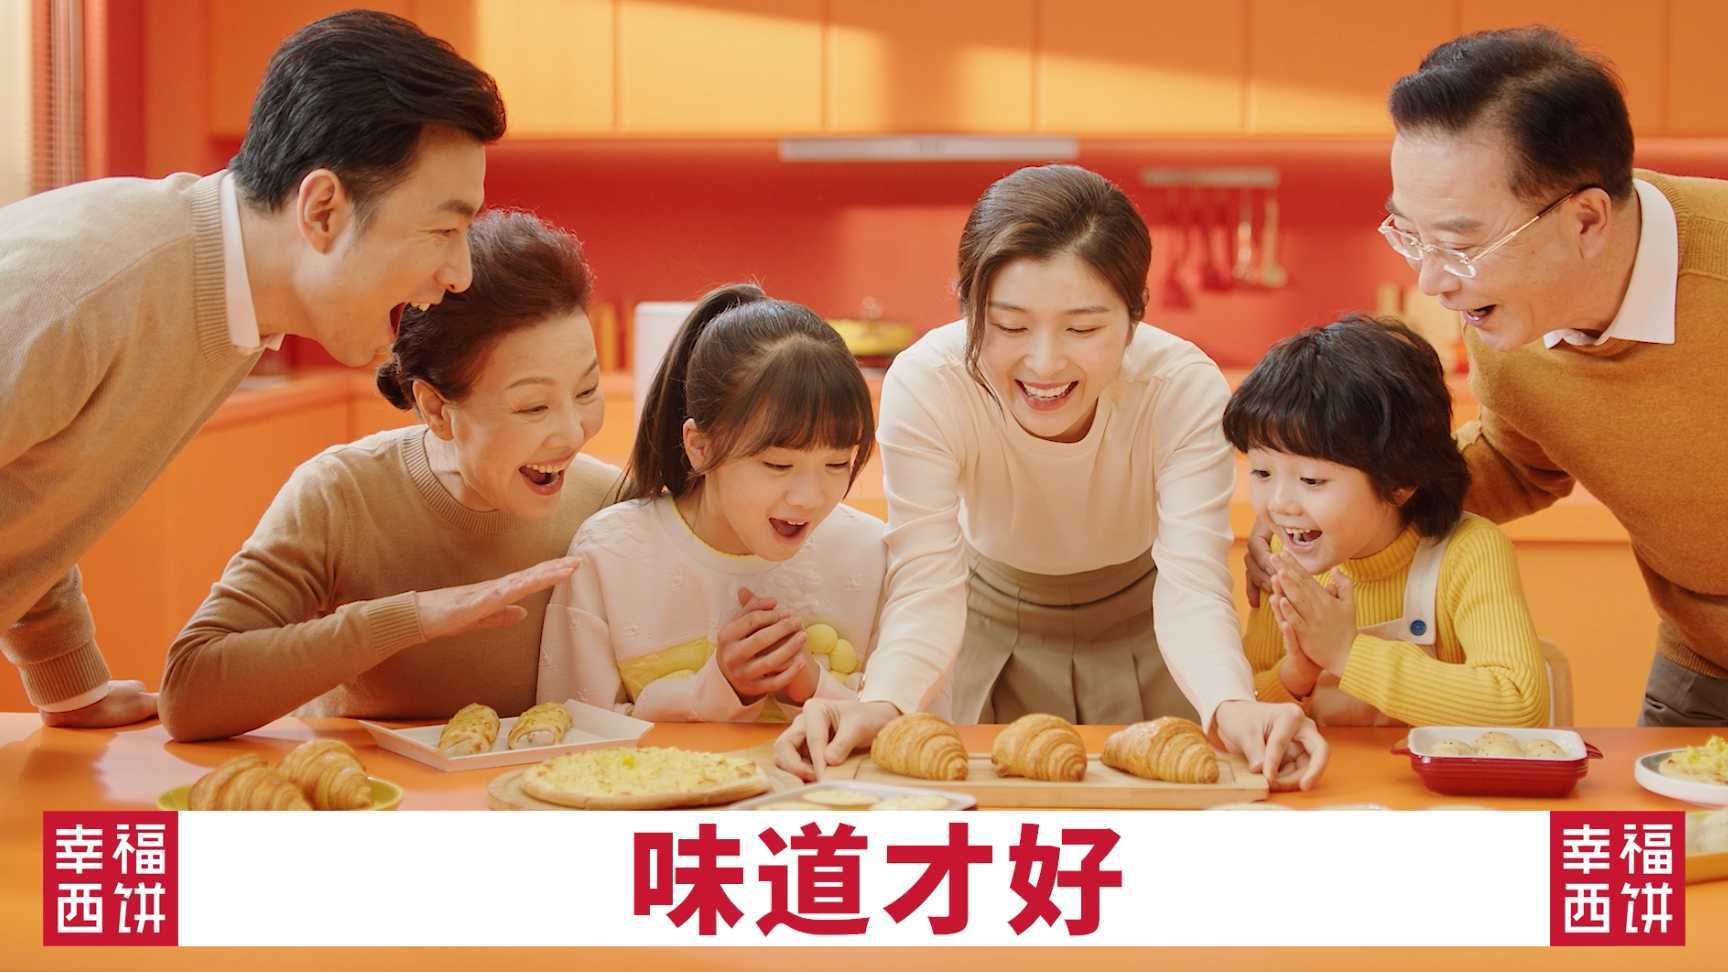 分众电梯广告 幸福西饼 产品系列篇